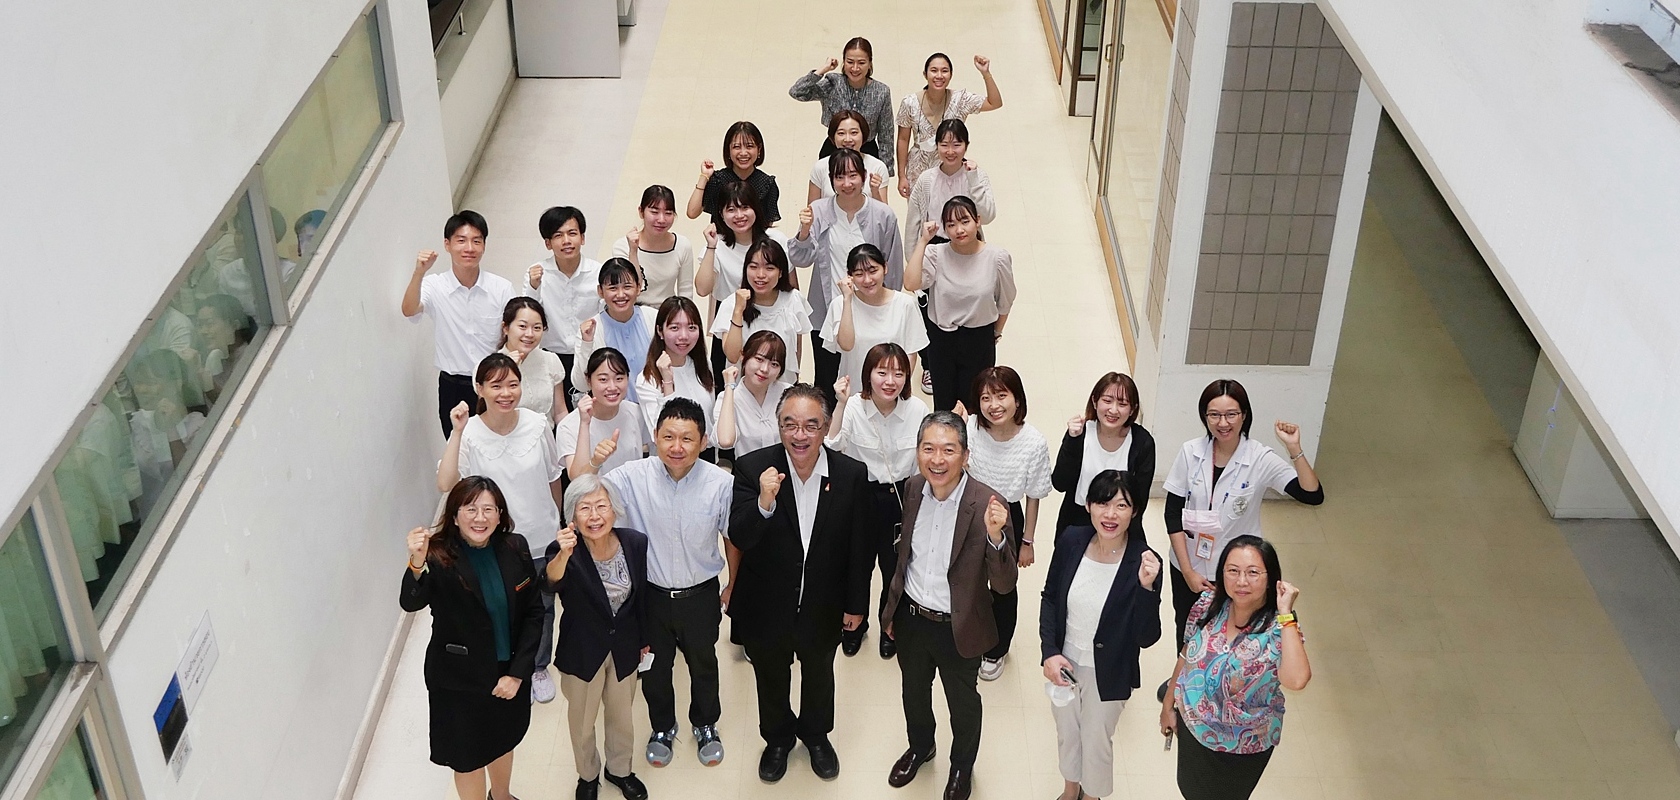 ยินดีต้อนรับอาจารย์และนักศึกษาแลกเปลี่ยนชาวต่างประเทศจาก Faculty of Pharmacy, Keio University ประเทศญี่ปุ่น